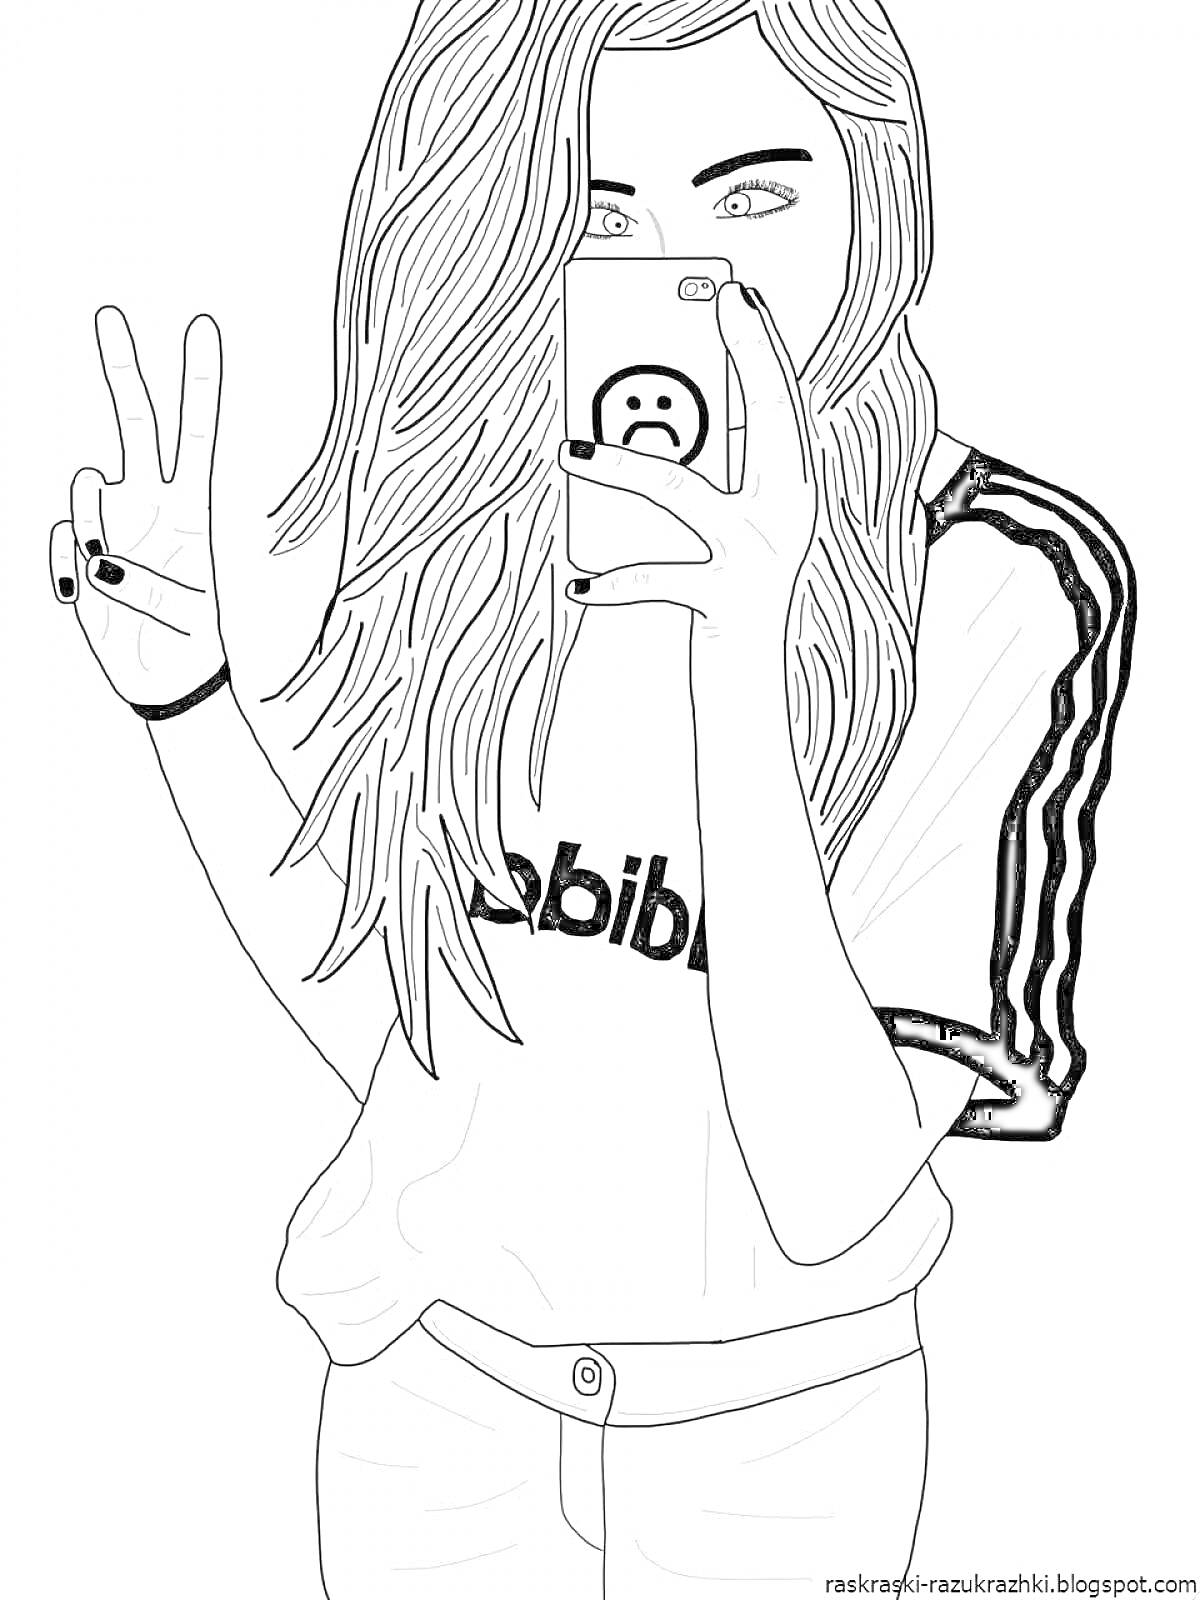 Раскраска Девушка с длинными волосами в футболке Adidas делает селфи с телефоном, показывая знак мира